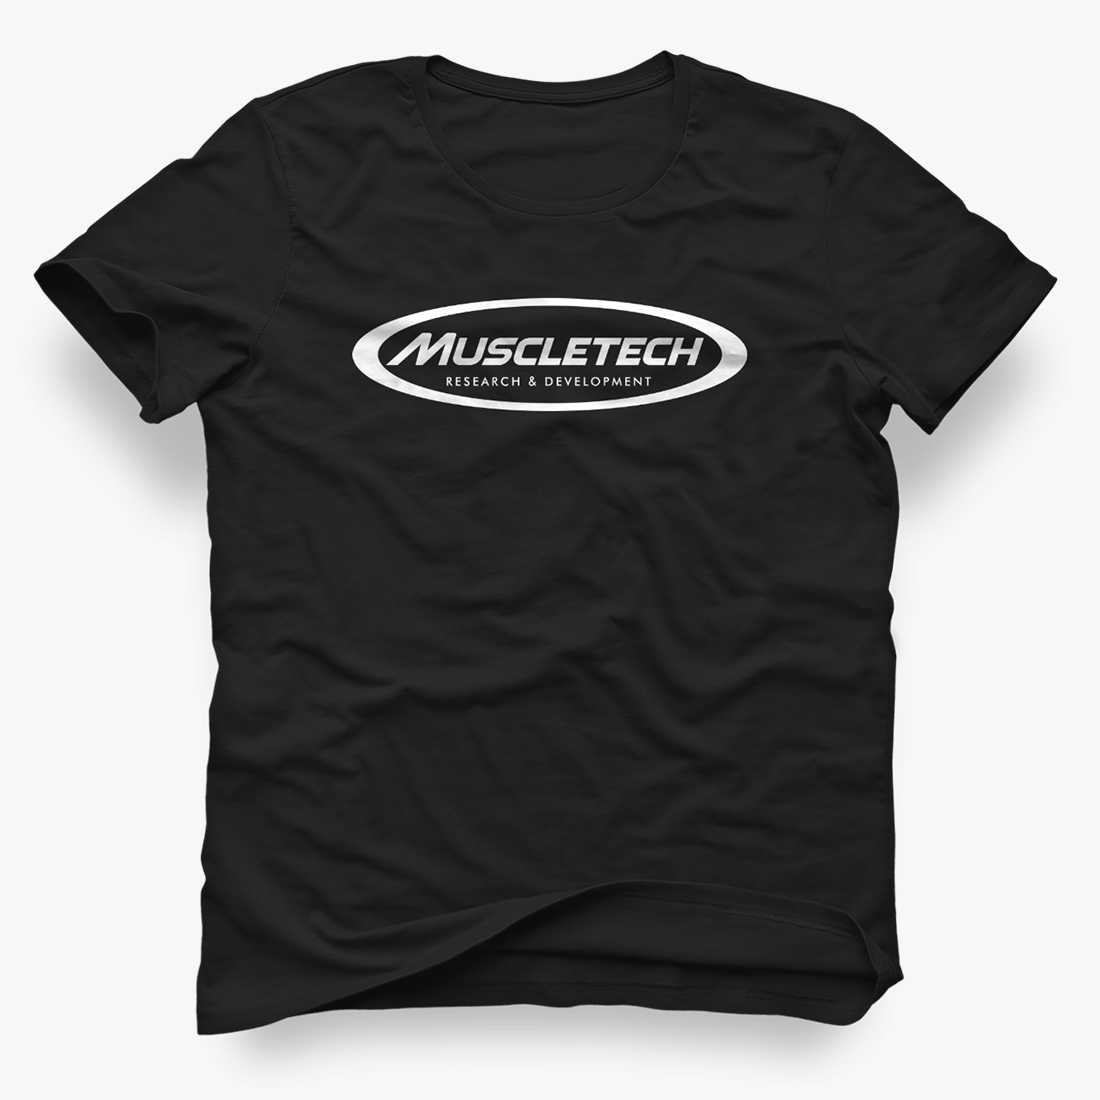 Muscletech - T-Shirt - Stylish and comfortable -